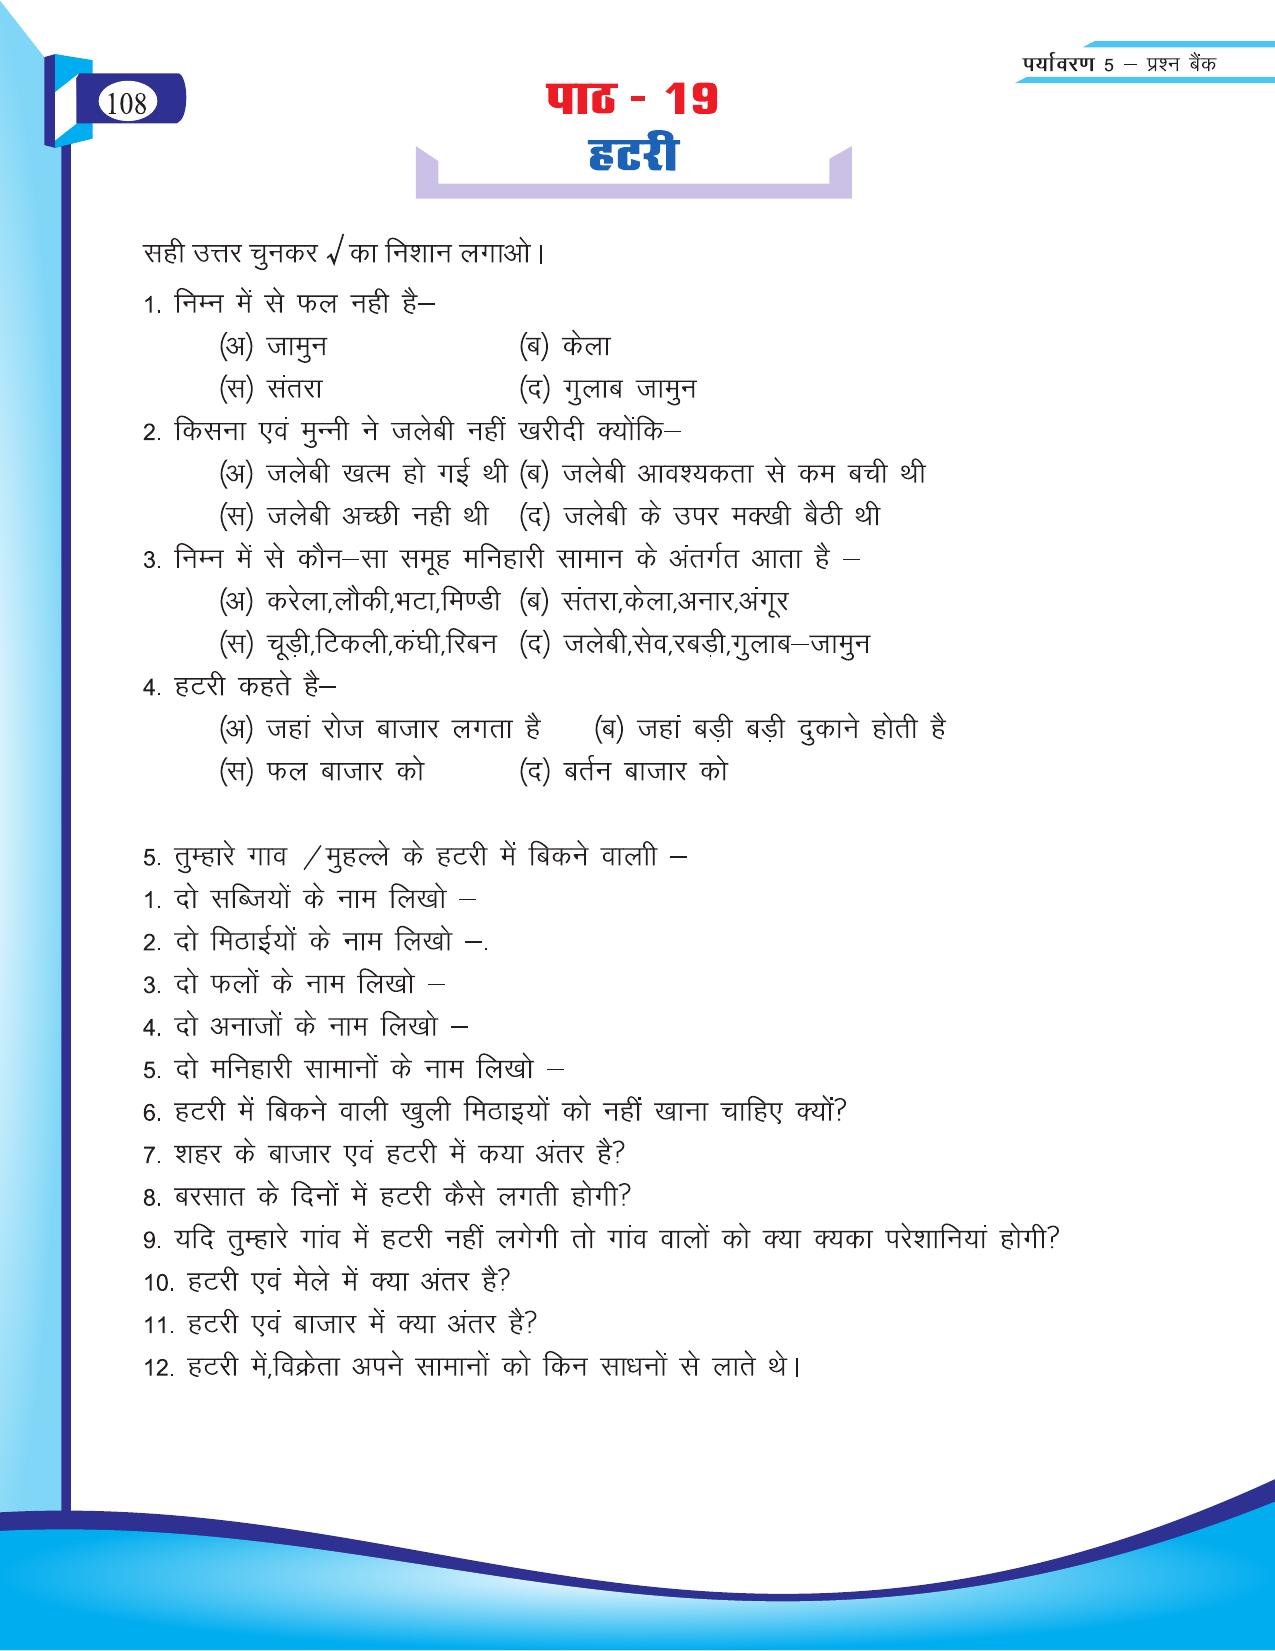 Chhattisgarh Board Class 5 EVS Question Bank 2015-16 - Page 34